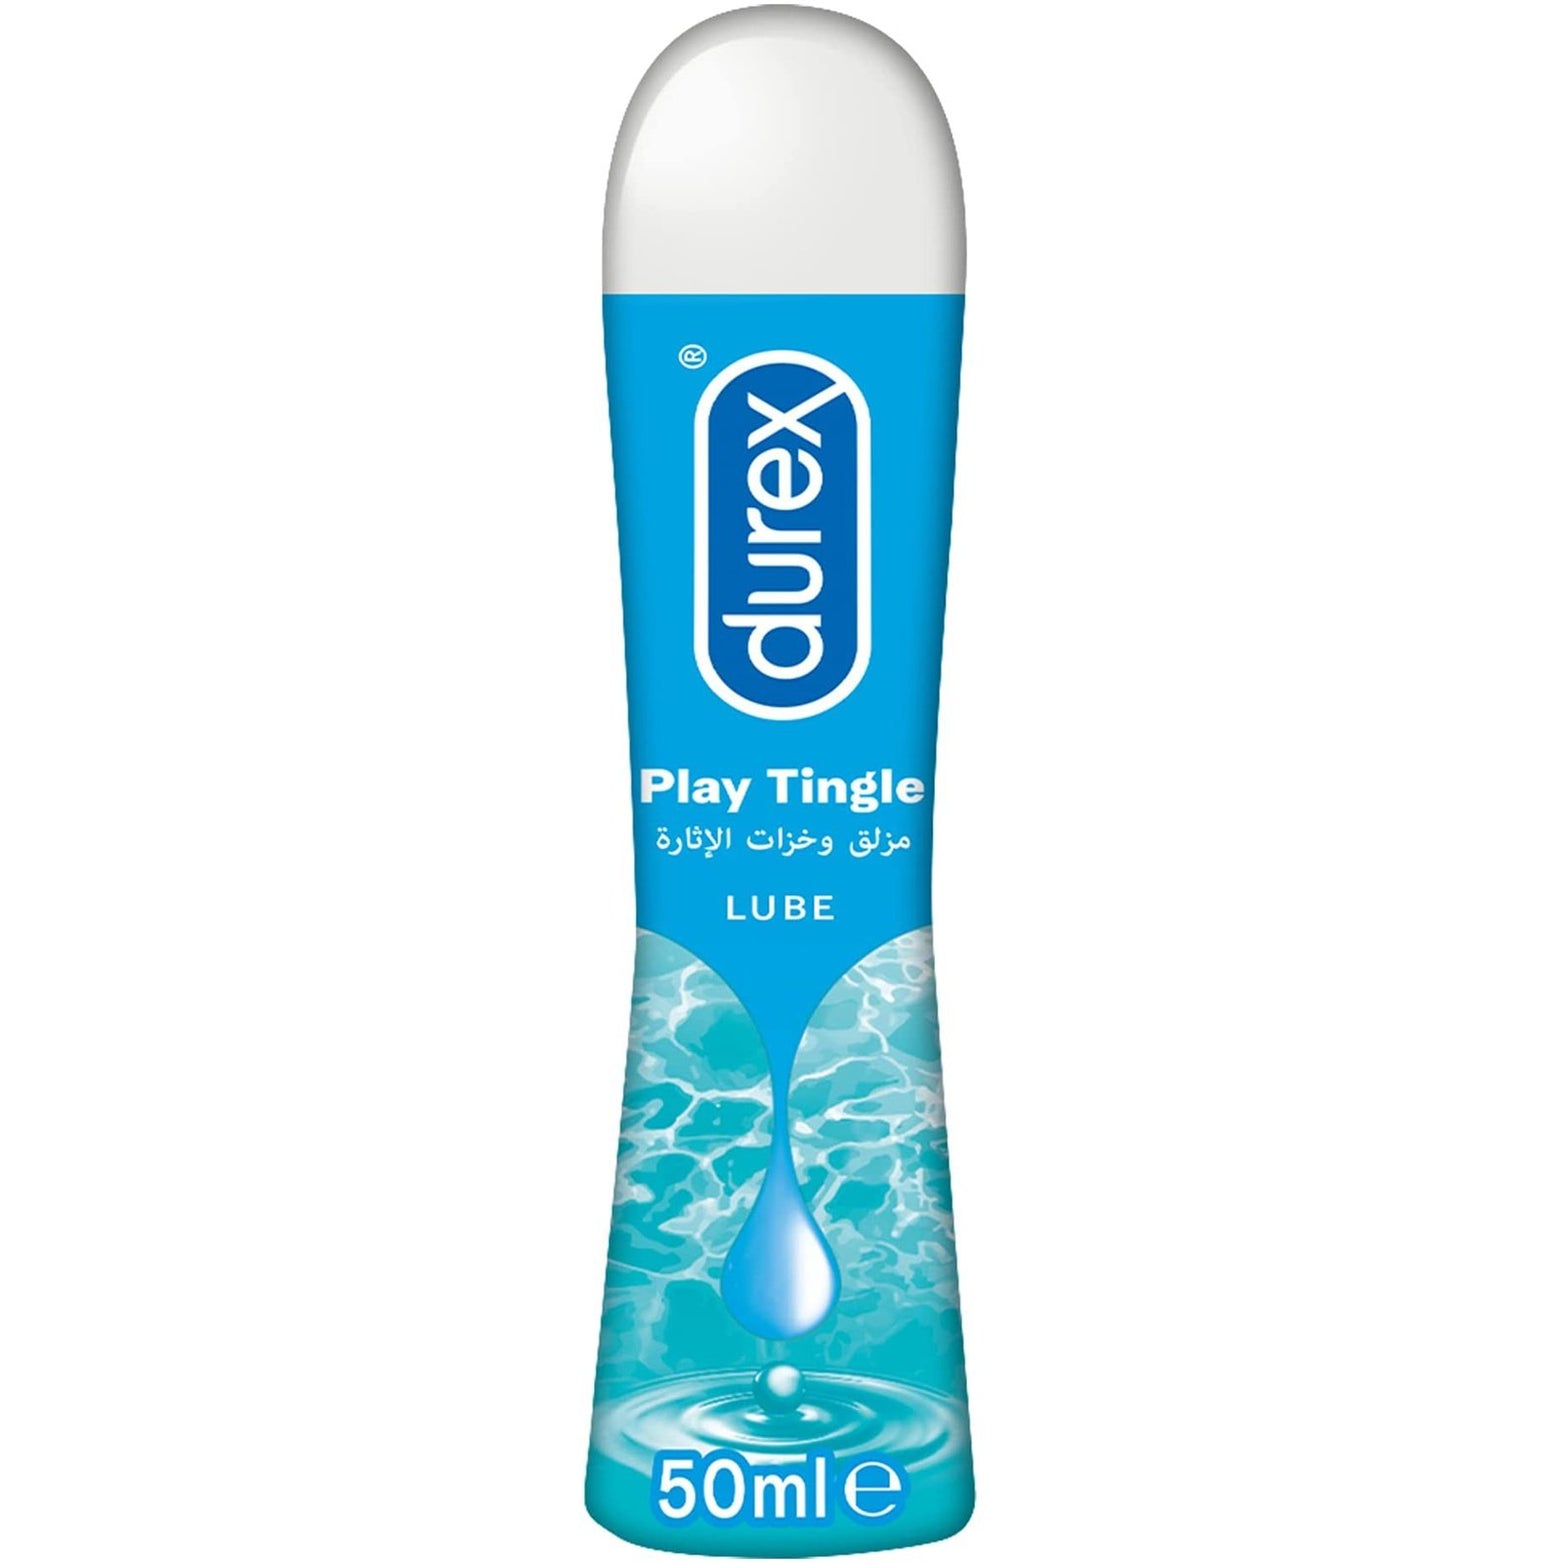 Durex Play Tingle Lubricant Gel, 50 ml - Med7 Online